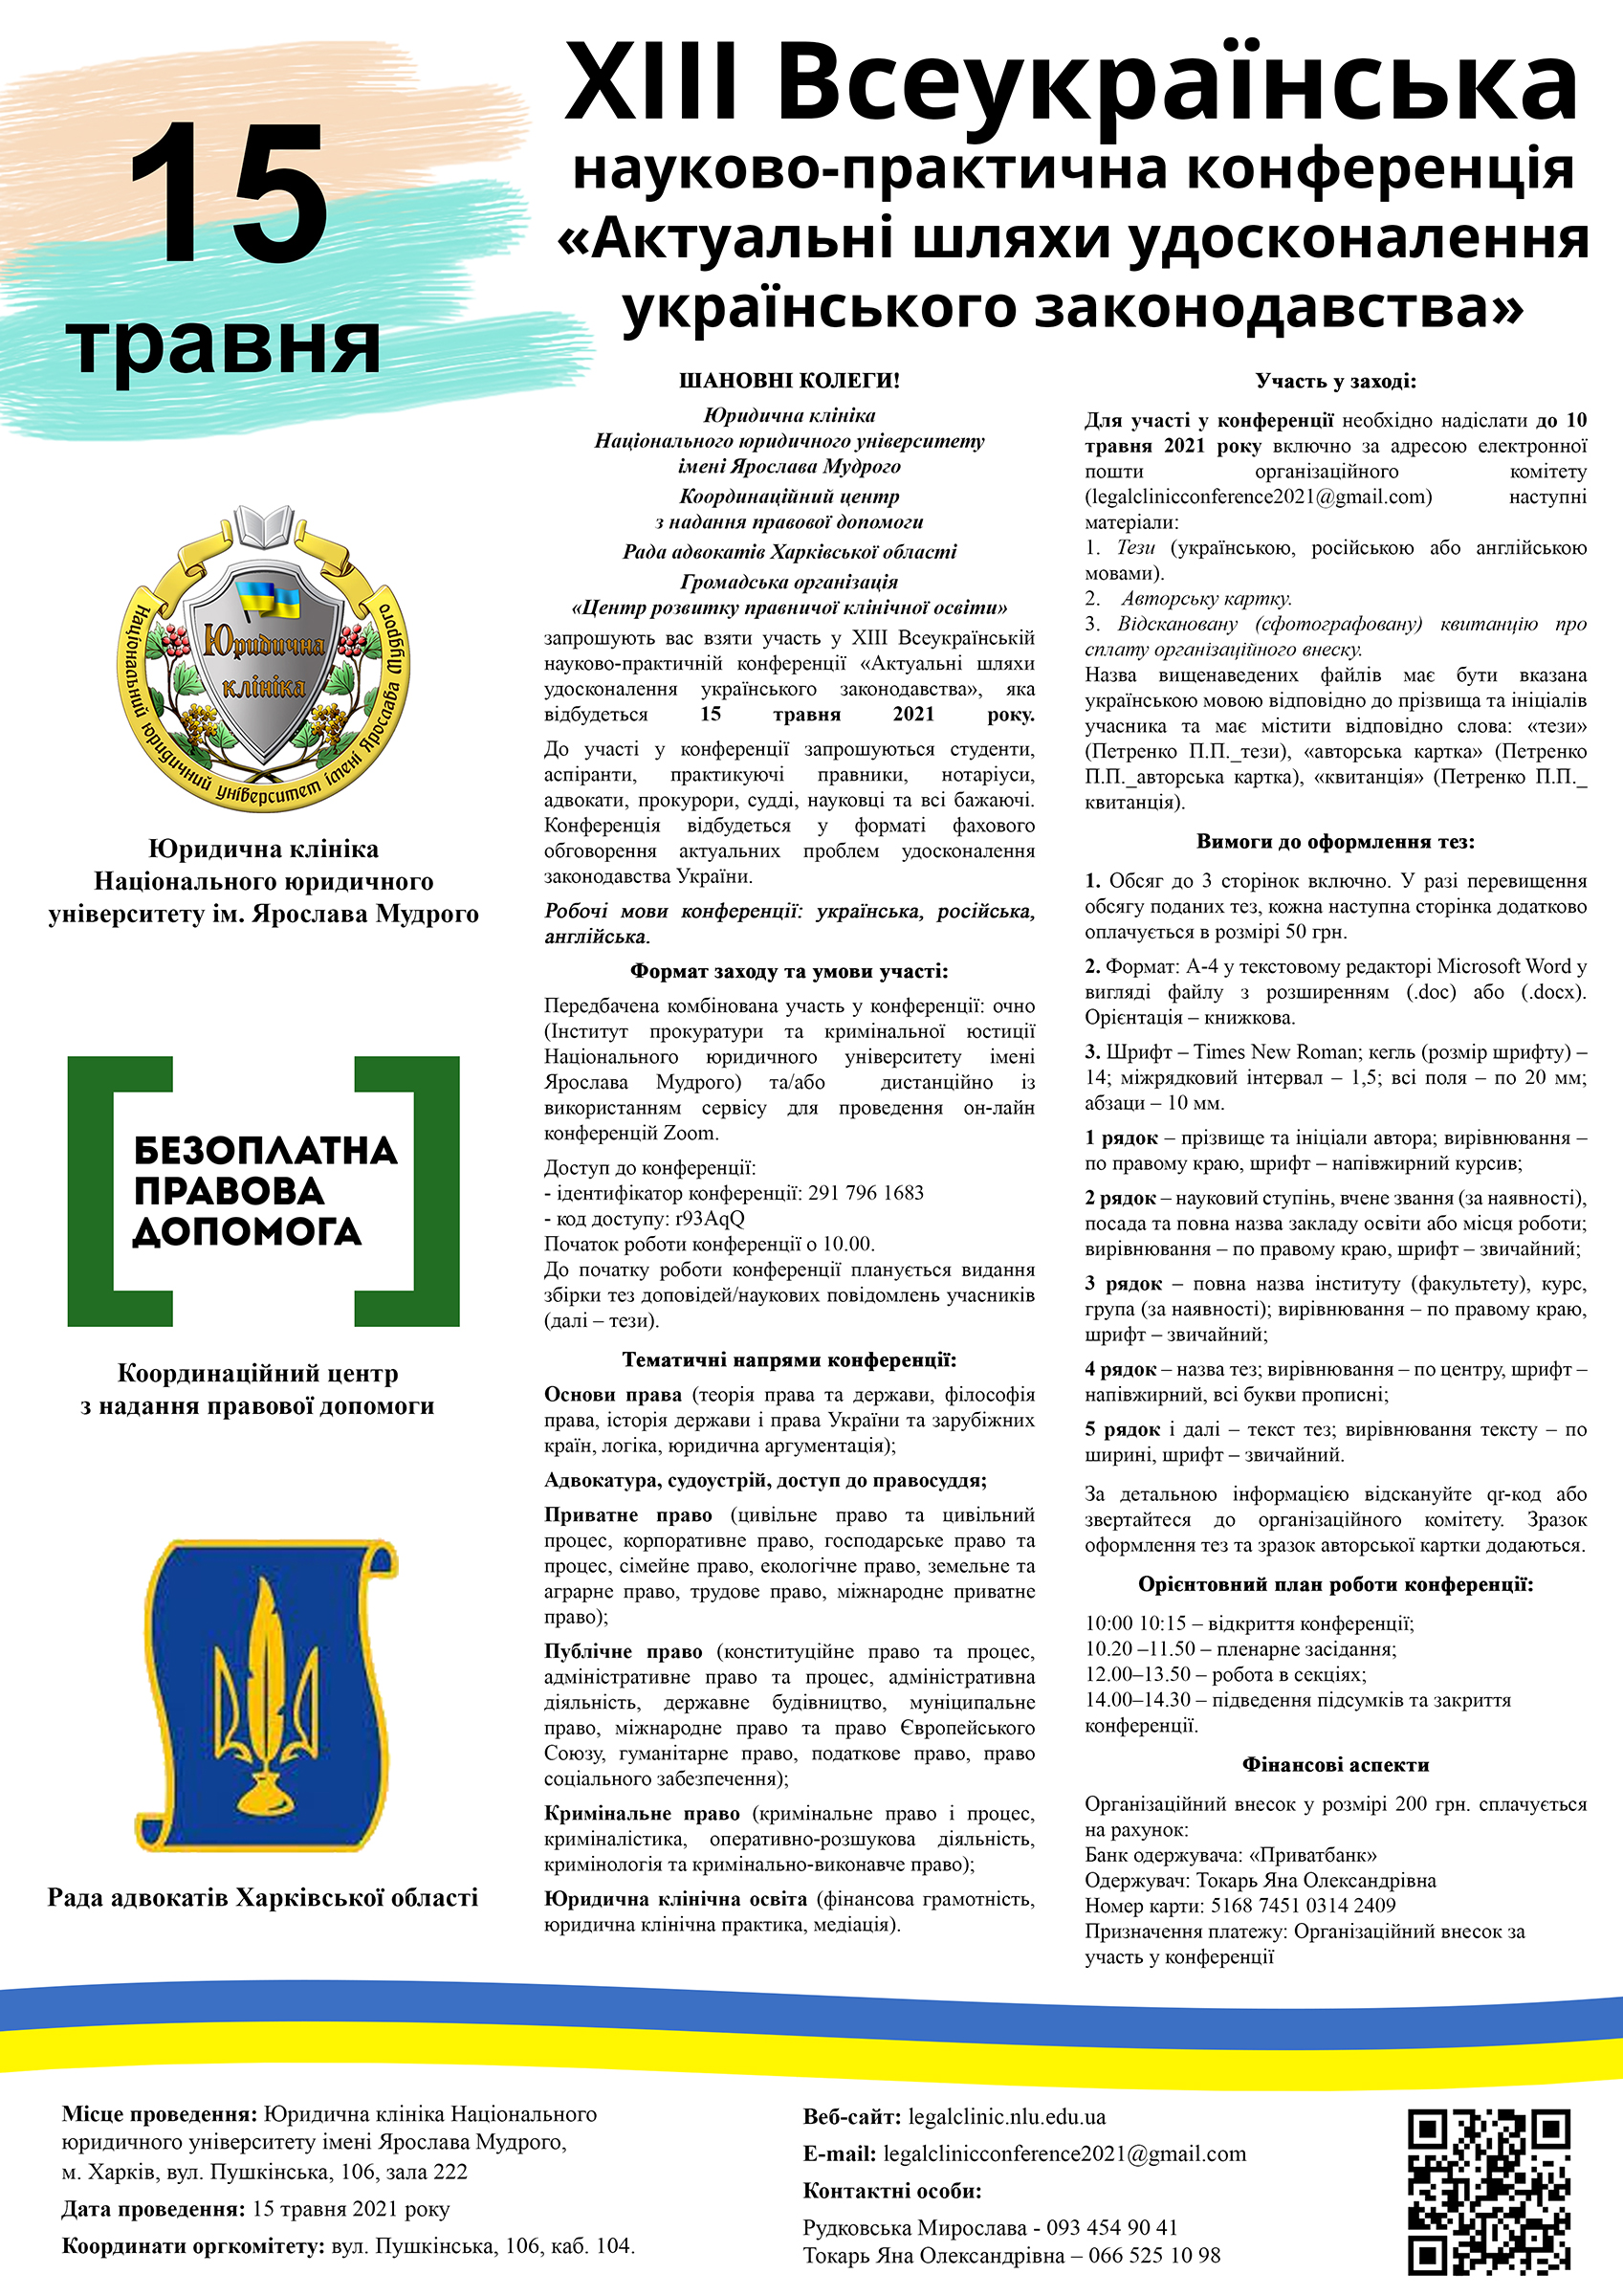 ХІIІ Всеукраїнська науково-практична конференція «Актуальні шляхи удосконалення українського законодавства»